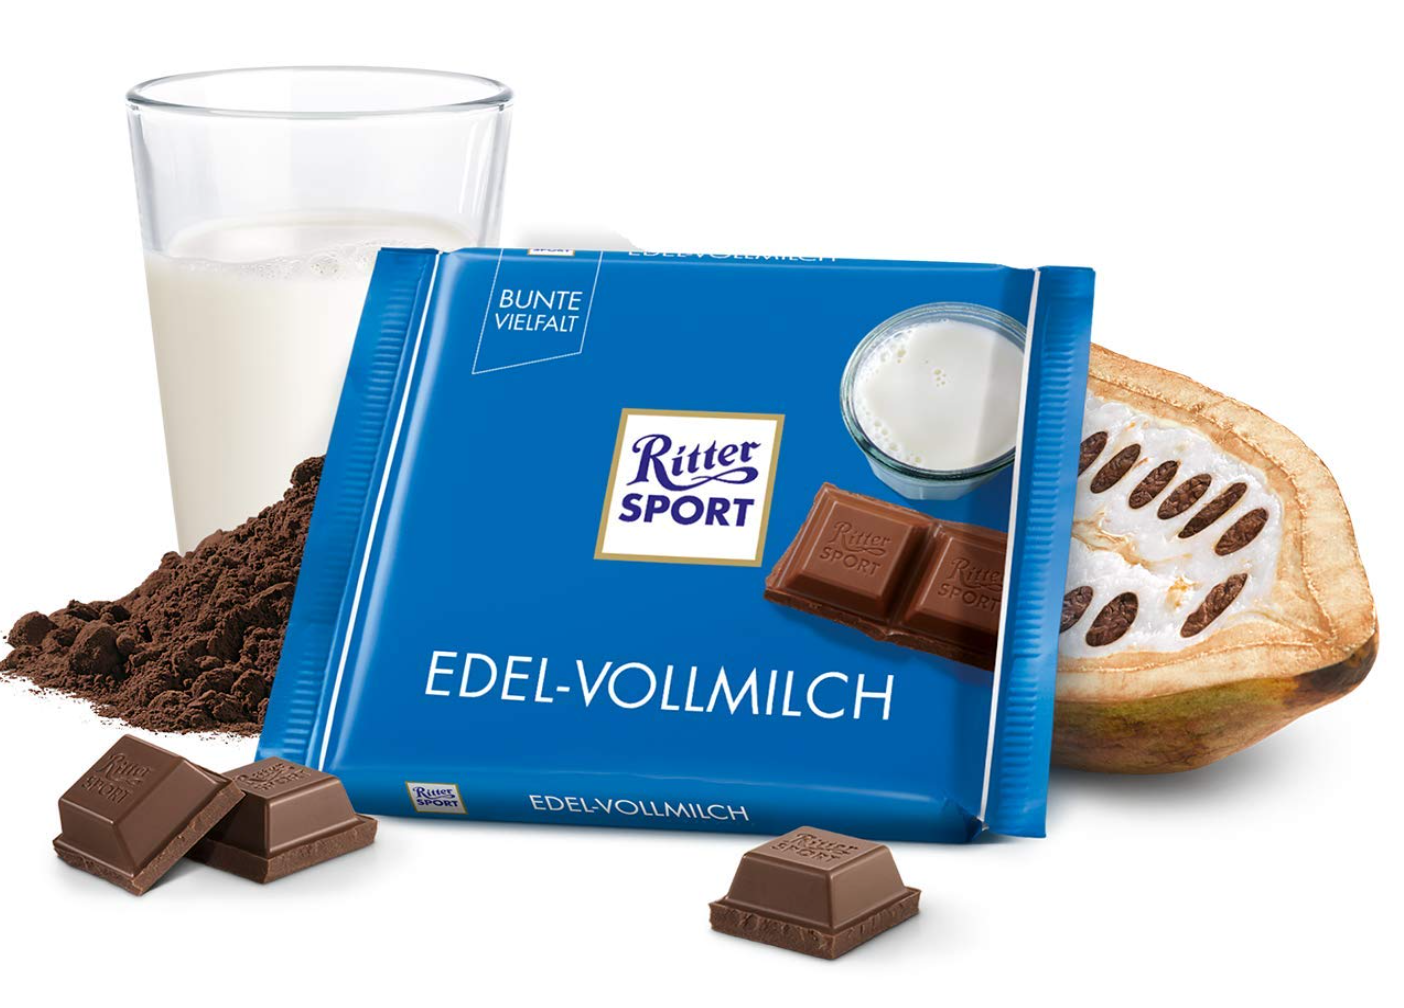 Ritter Sport premium whole milk 12x100g (Edel-Vollmilch)